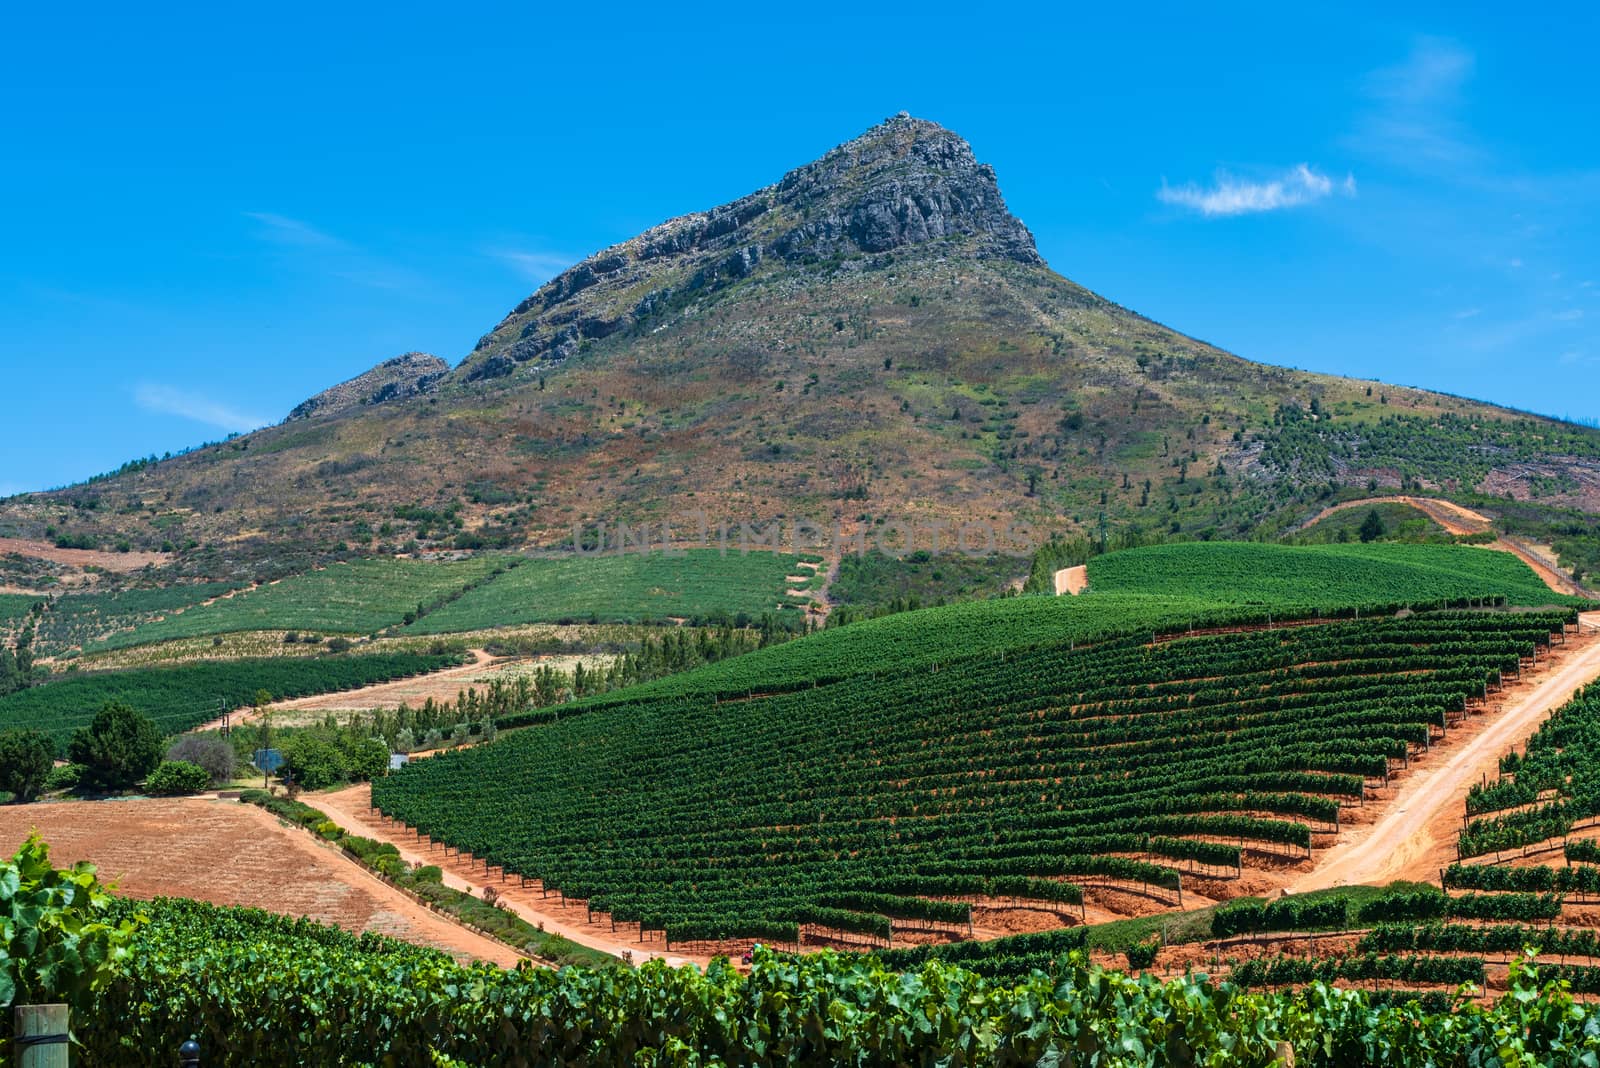 Mount Sttelnbosch overlooking a South African vineyard.